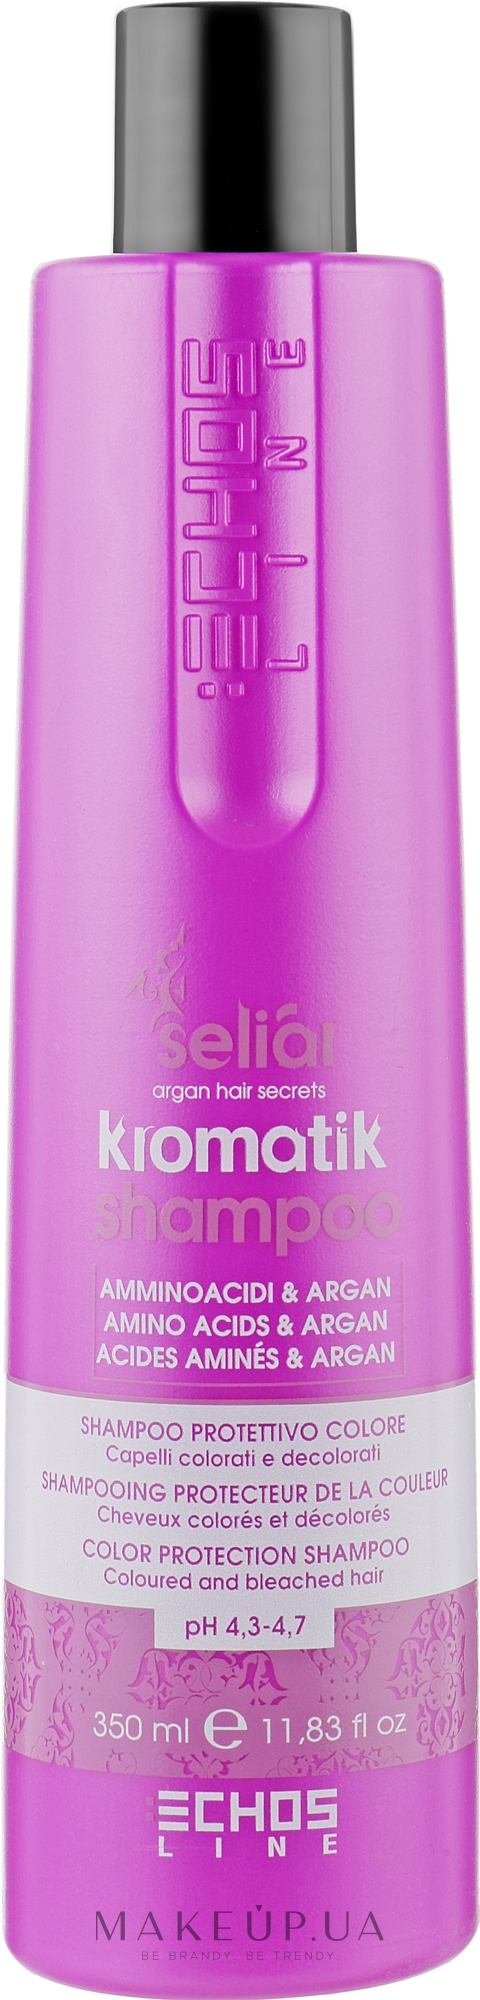 Echosline Seliar Shampoo - Шампунь для окрашенных волос: купить лучшей цене в Украине Makeup.ua